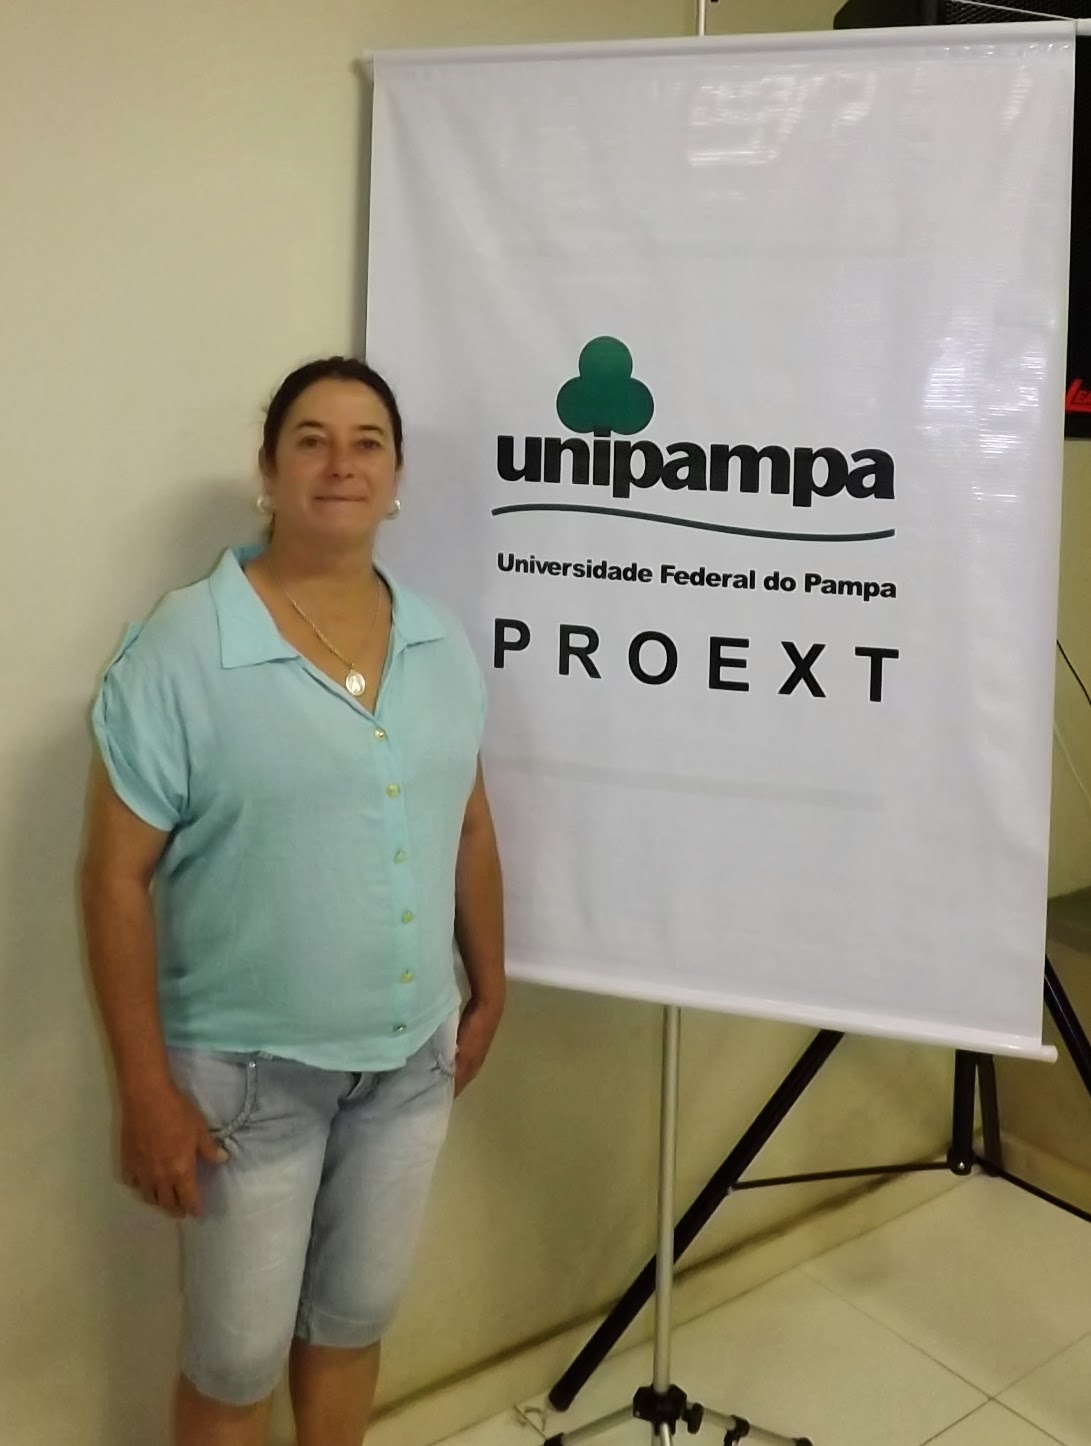 Proext Unipampa